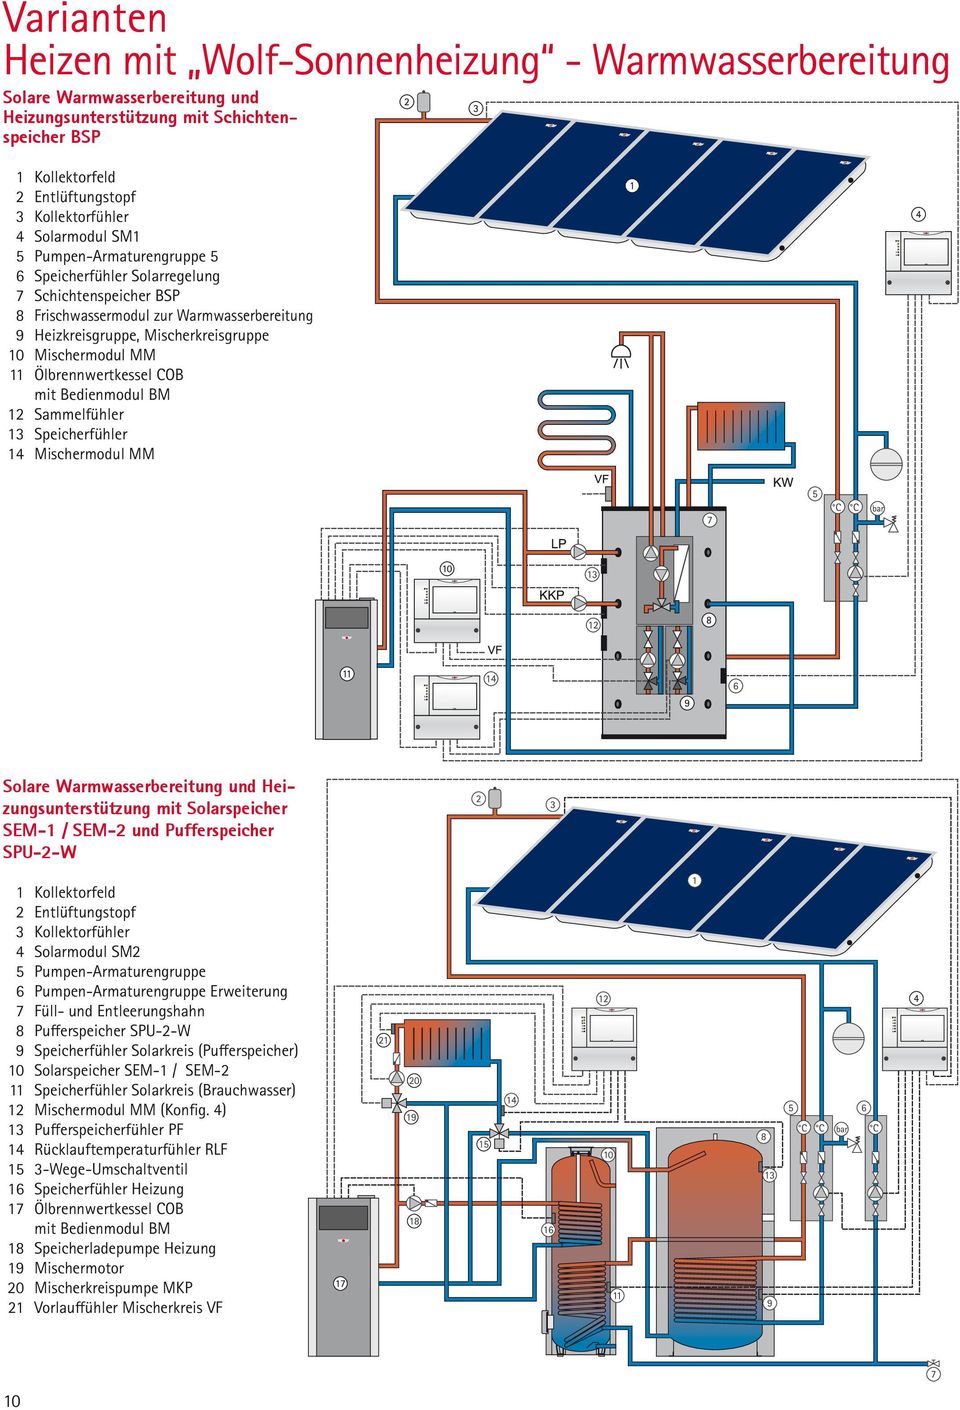 11 Ölbrennwertkessel COB mit Bedienmodul BM 12 Sammelfühler 13 Speicherfühler 14 Mischermodul MM Solare Warmwasserbereitung und Heizungsunterstützung mit Solarspeicher SEM-1 / SEM-2 und